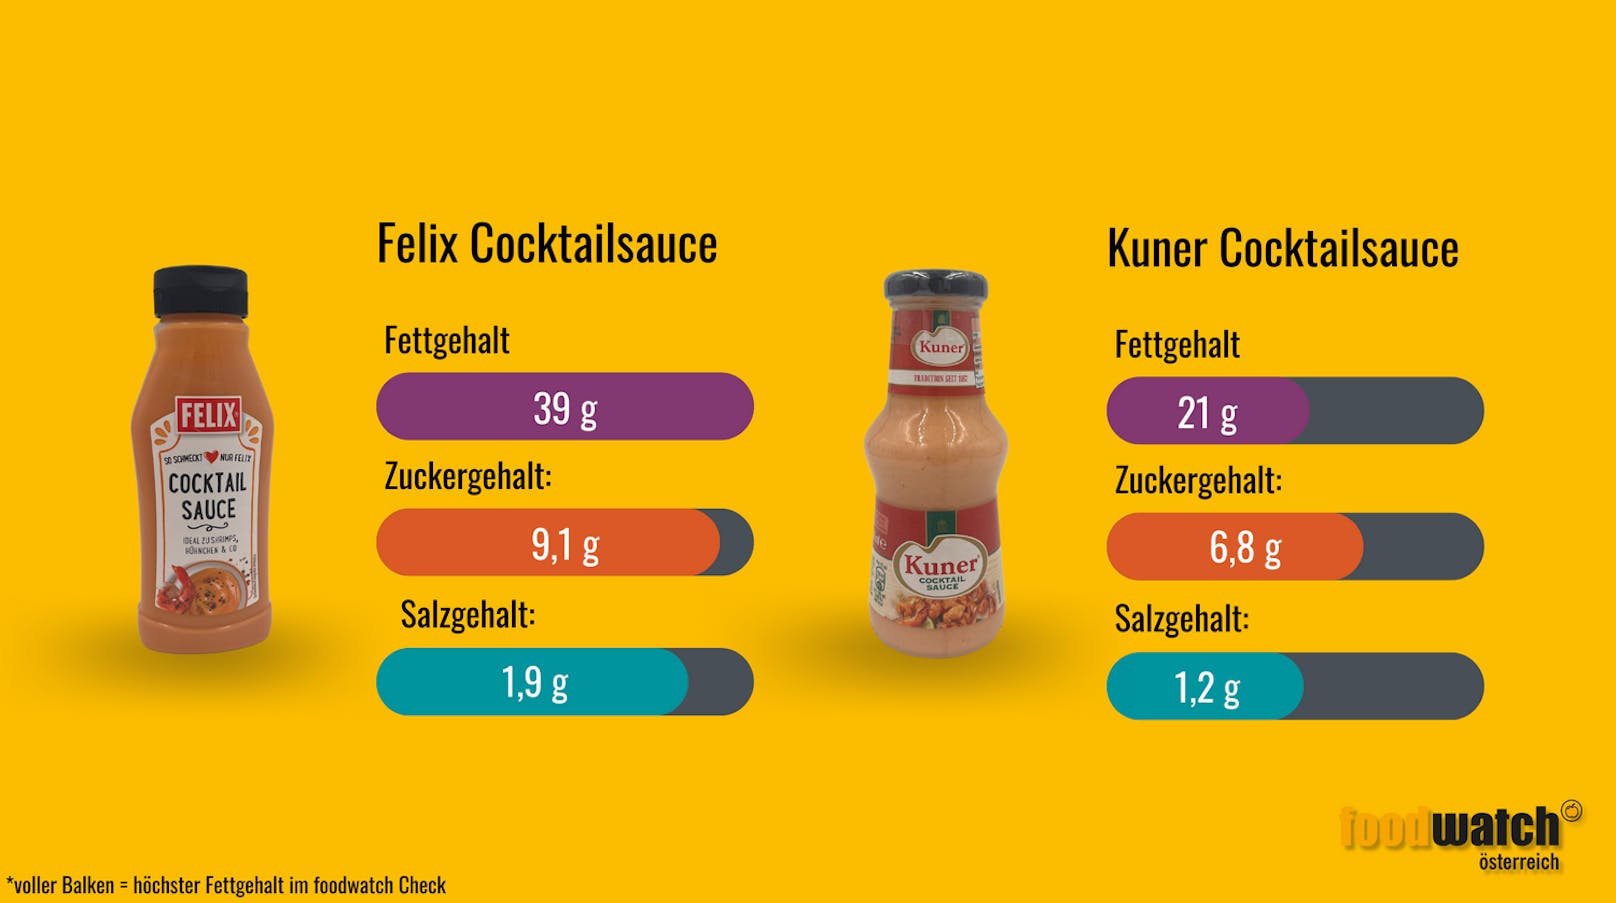 Die Cocktail-Sauce von Felix enthält fast doppelt so viel Fett wie die Cocktail Sauce von Kuner.